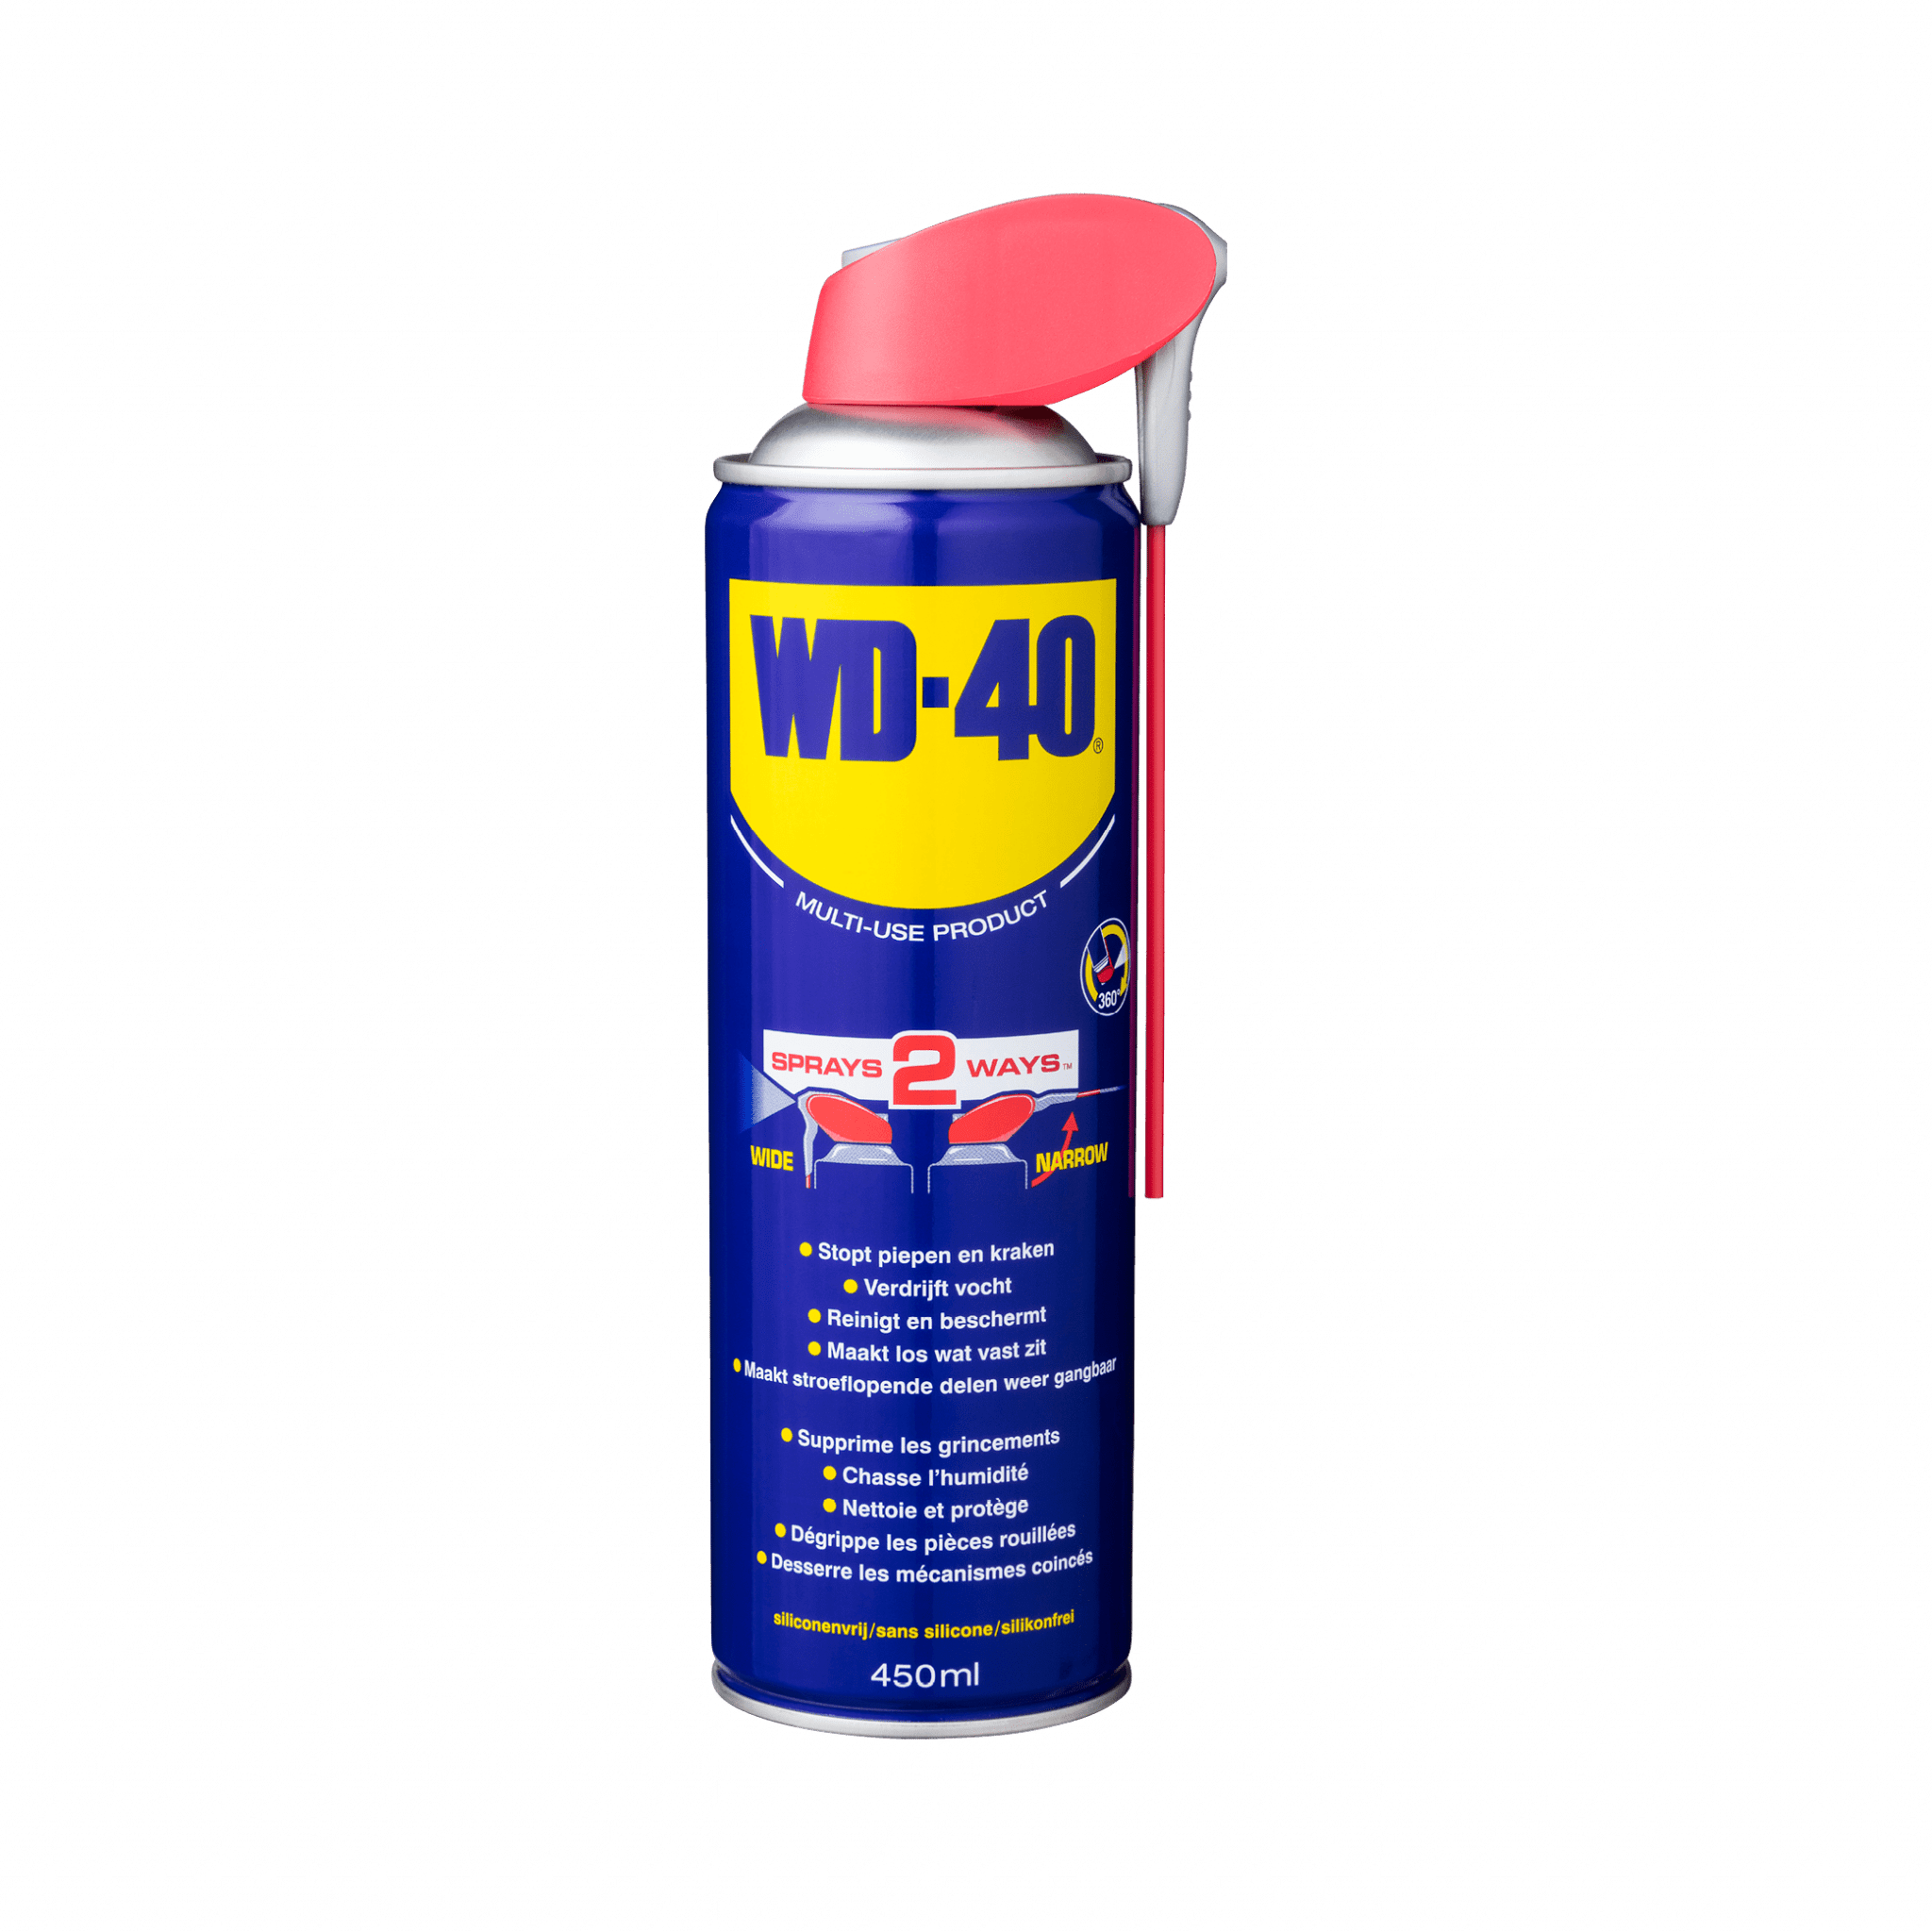 WD-40 Specialist Kettingspray voor smering, bescherming en reiniging van motorfietskettingen (400ml)